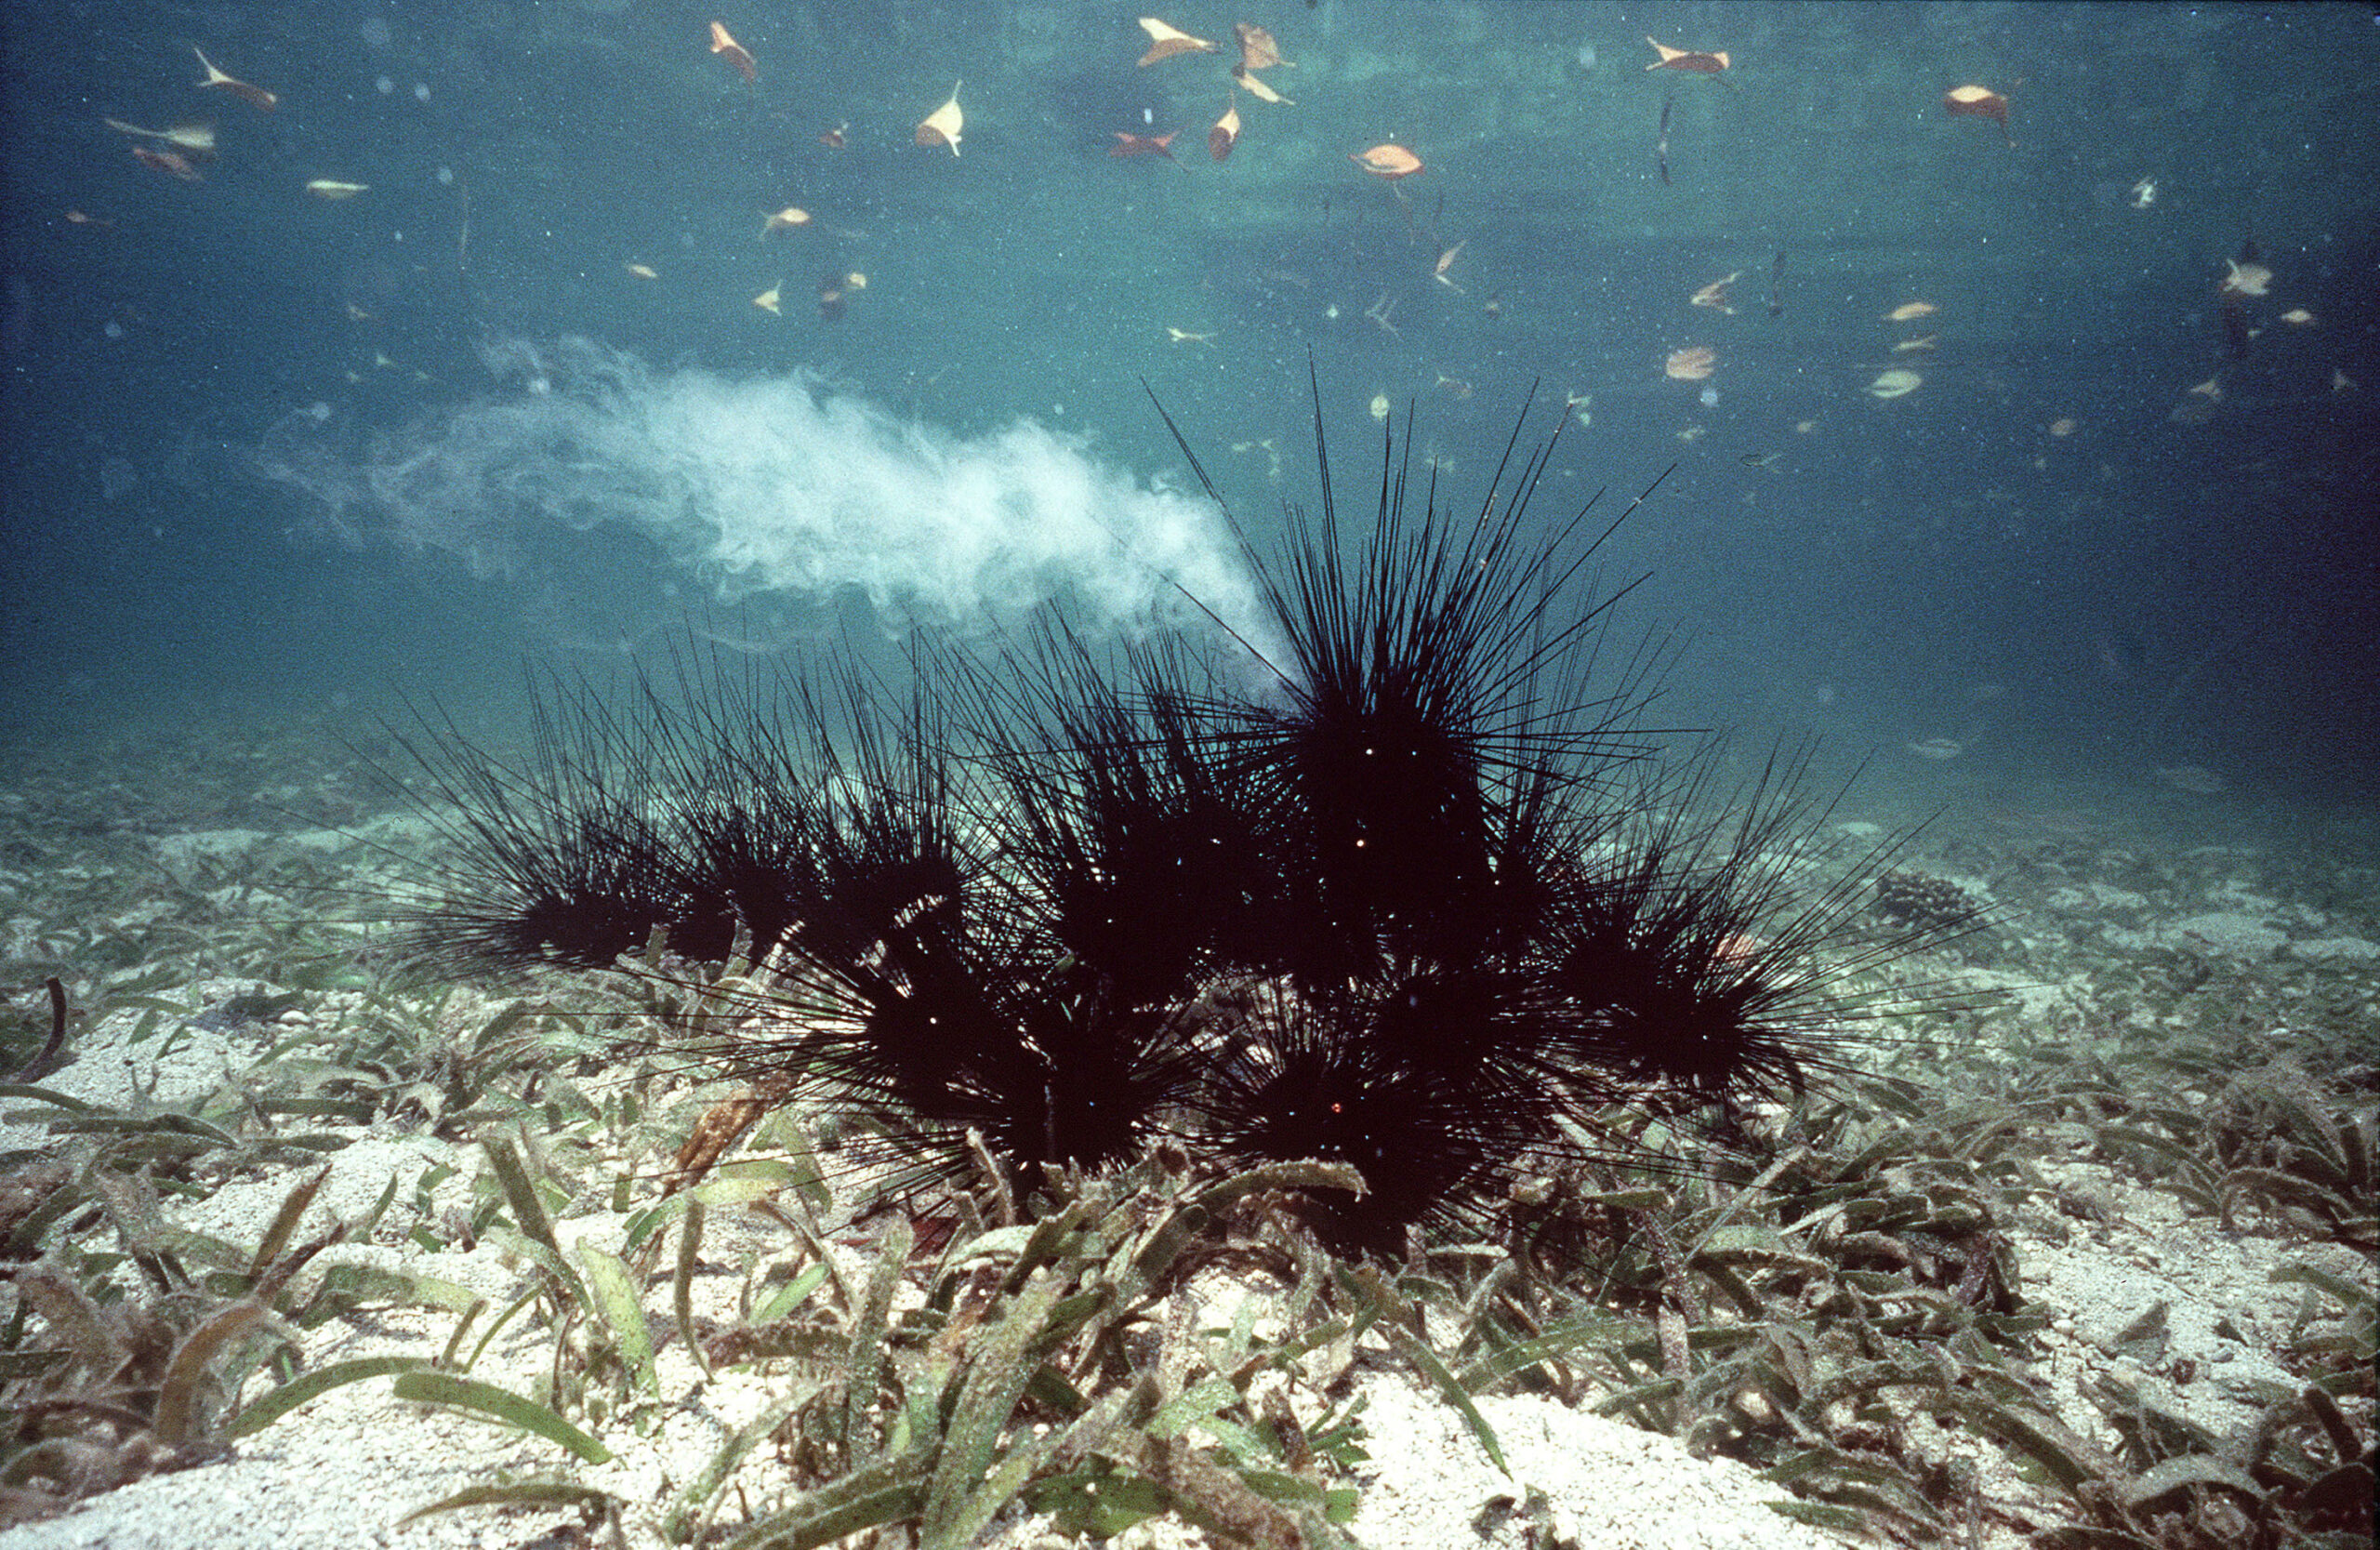 Seeigel unter Wasser (Diadema setosum)